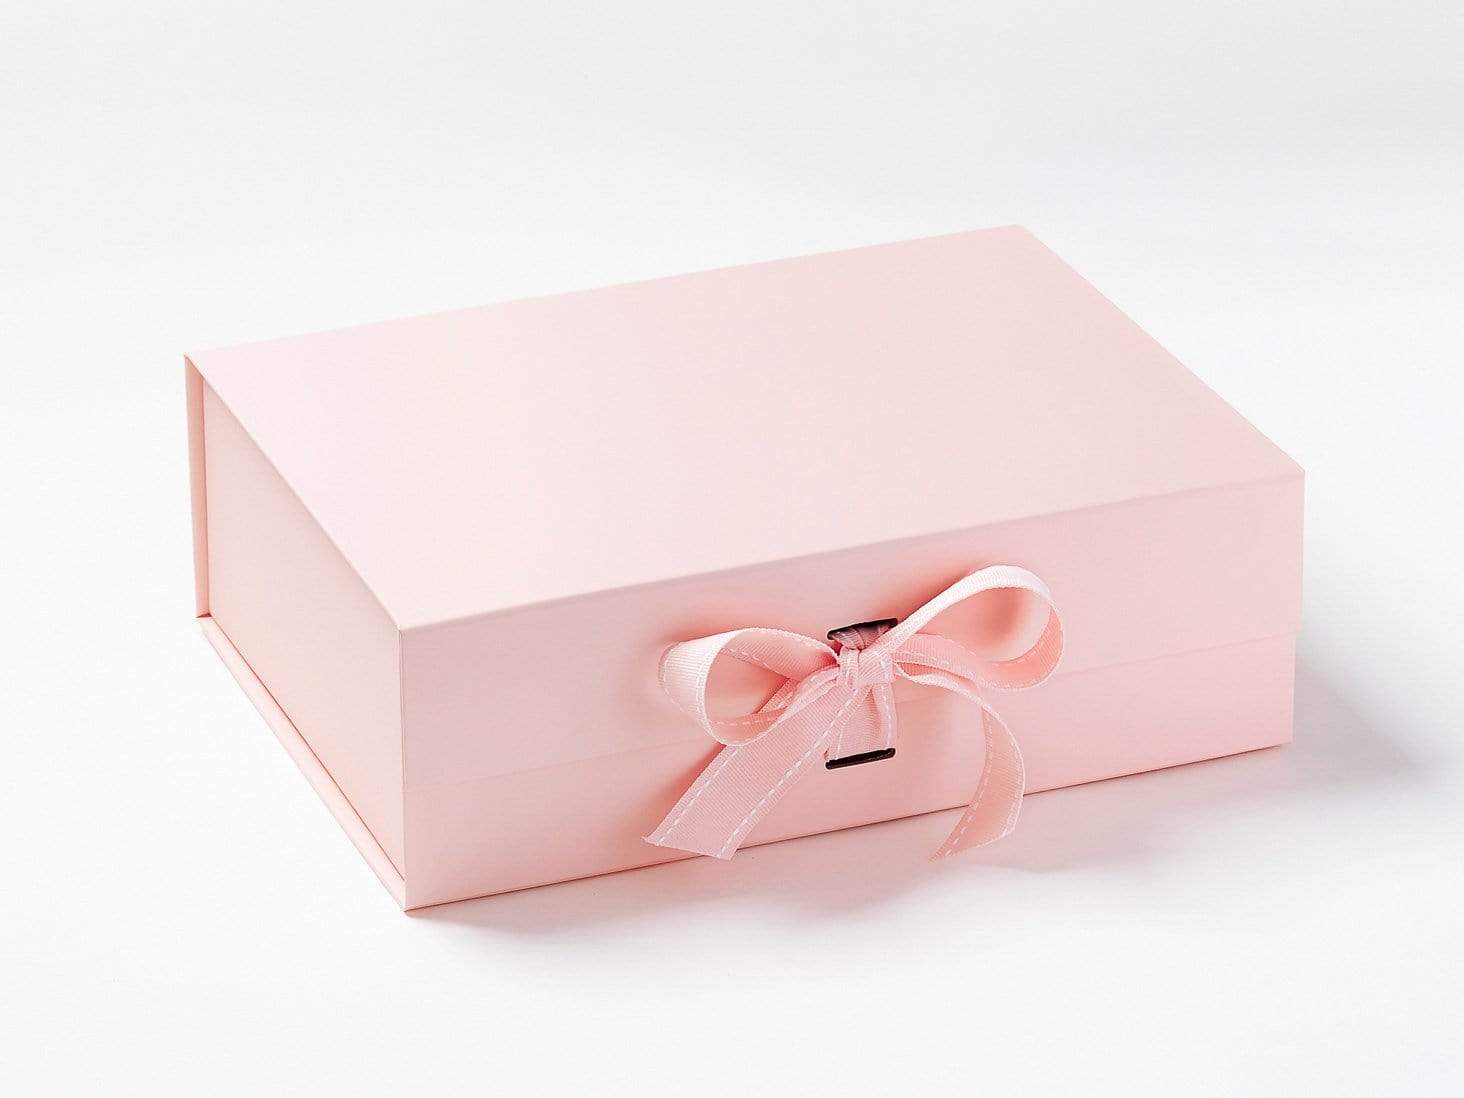 Pale Pink A4 Deep Gift Box from Foldabox USA